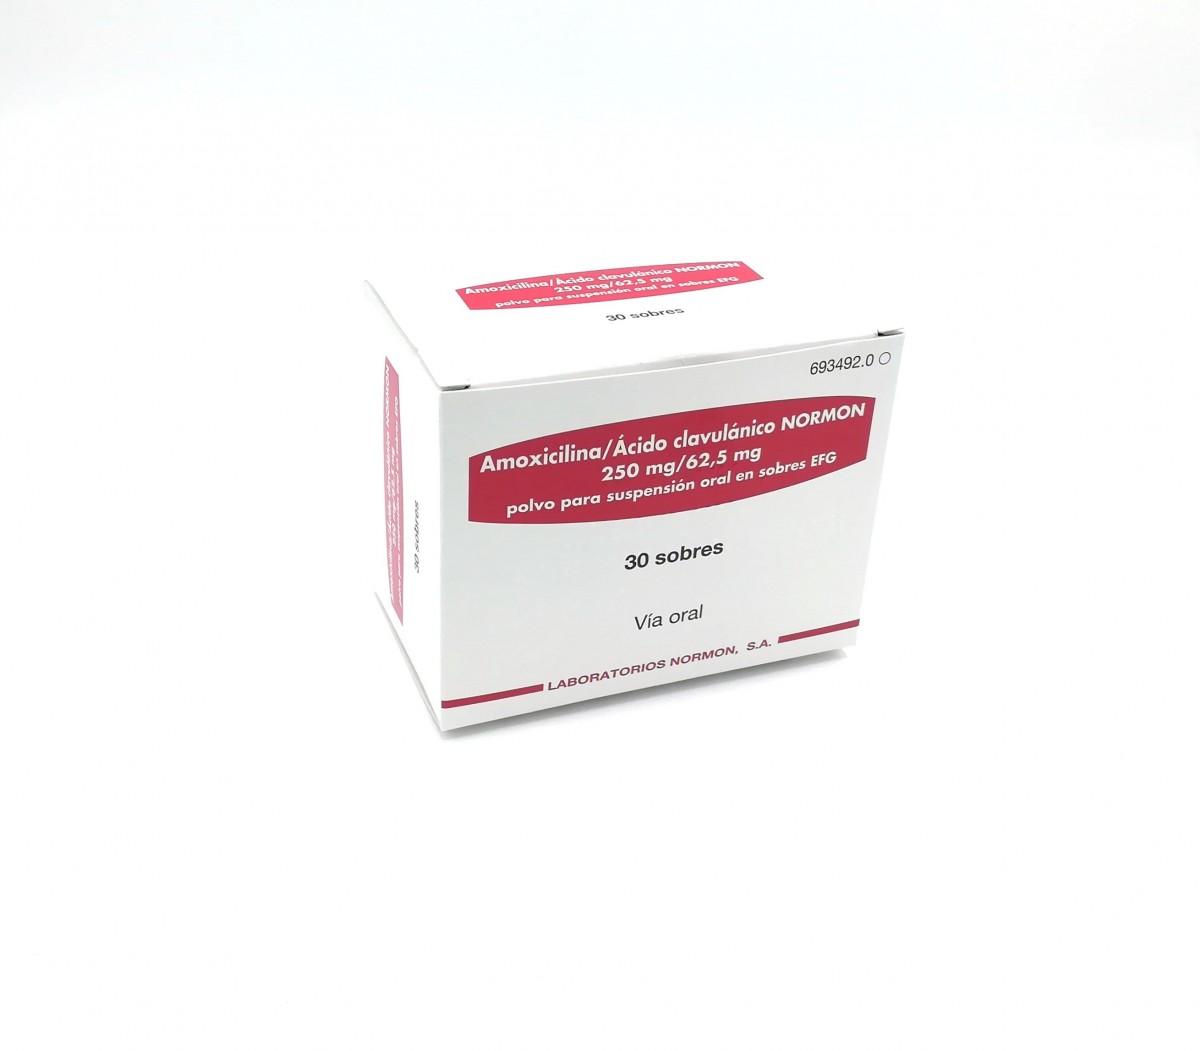 AMOXICILINA/ACIDO CLAVULANICO NORMON 250 mg/62,5 mg  POLVO PARA SUSPENSION ORAL EN SOBRES EFG, 24 sobres fotografía del envase.